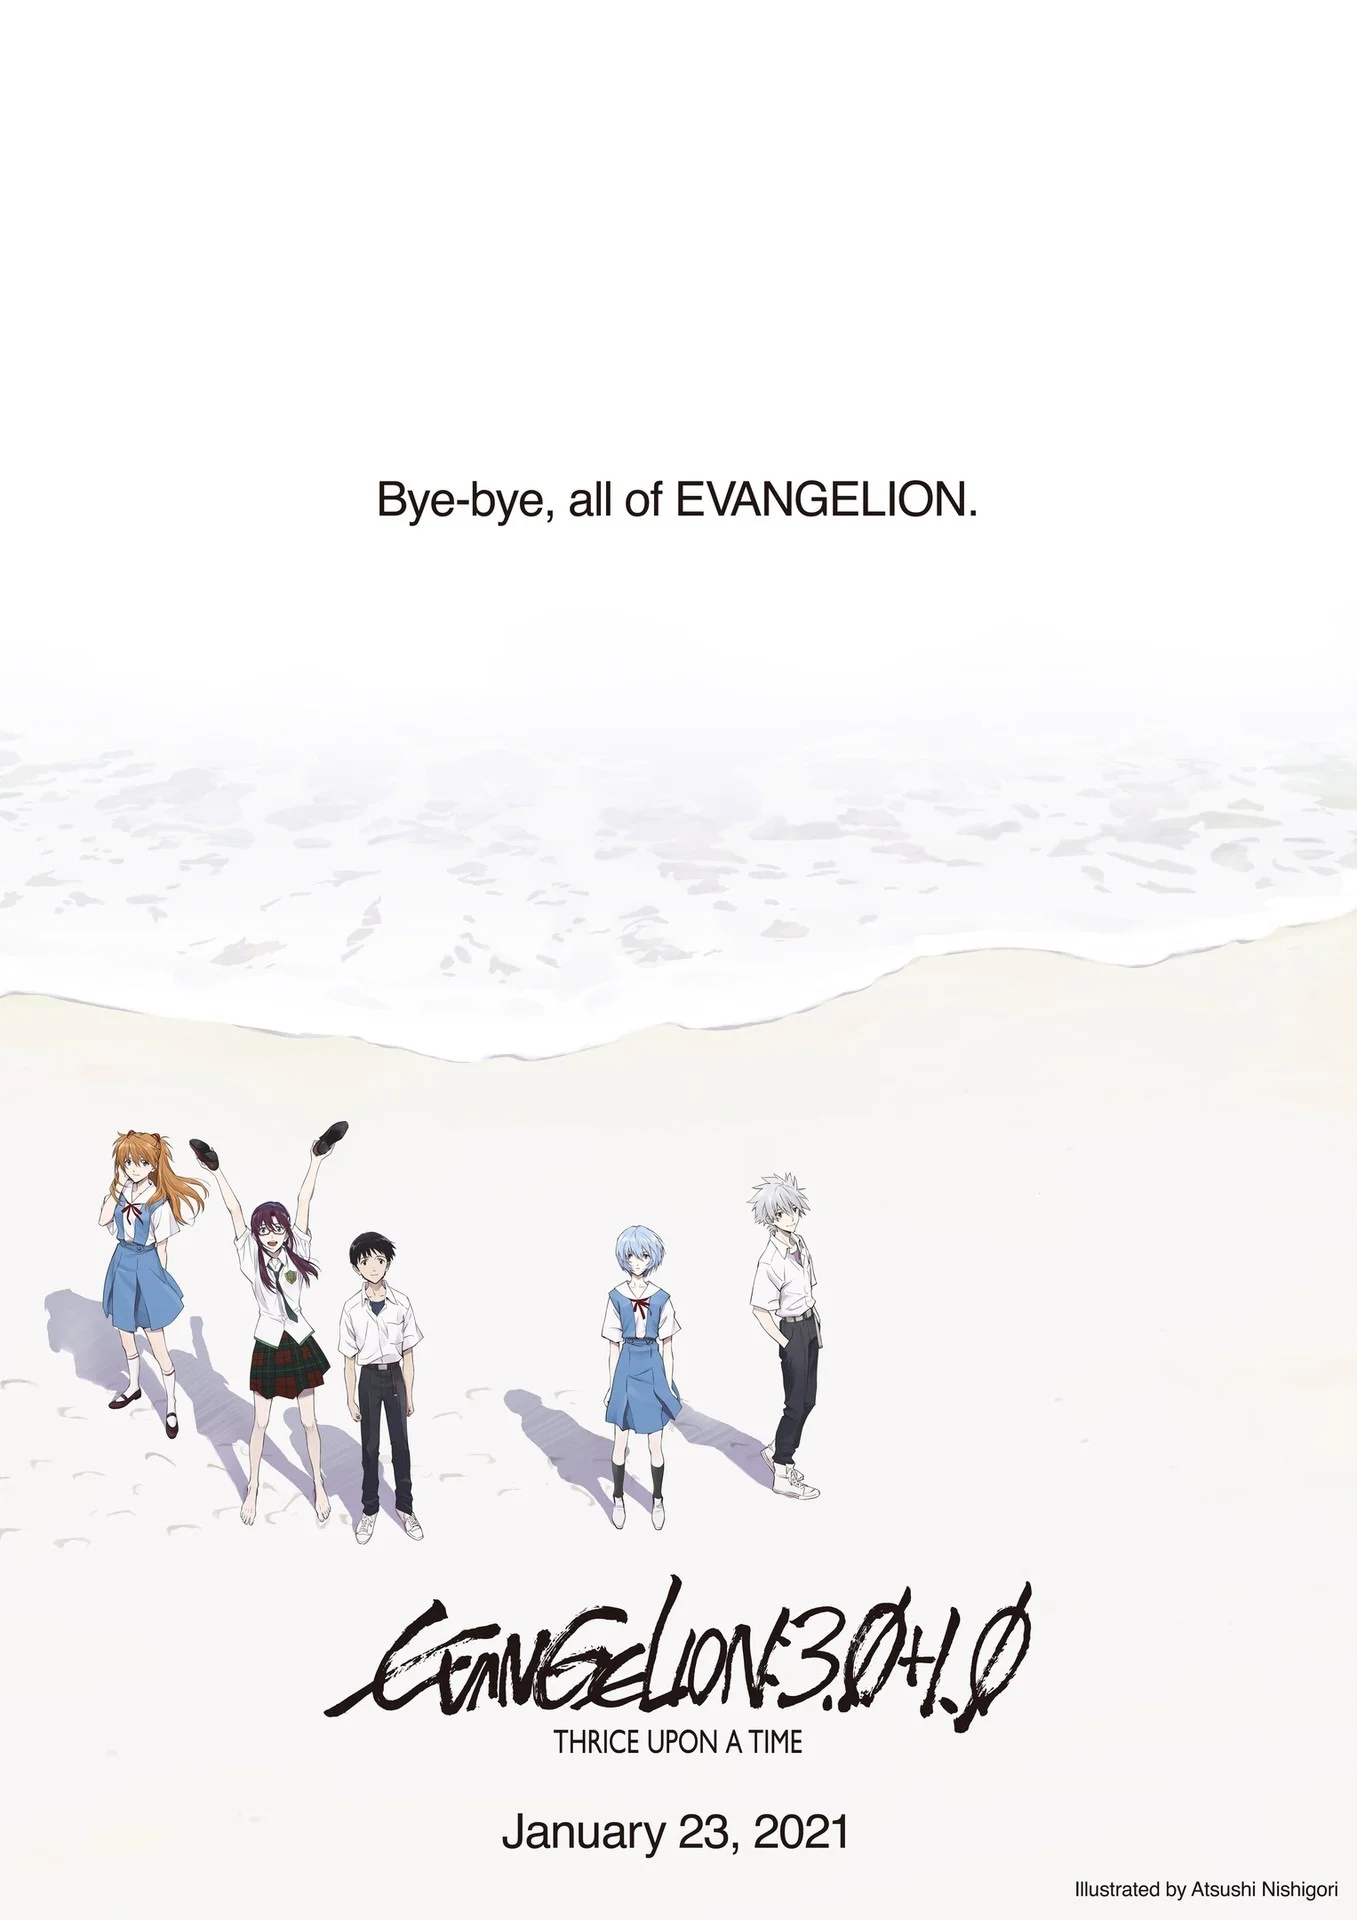 Вышел официальный трейлер аниме Evangelion: 3.0+1.0 Thrice Upon a Time - фото 1